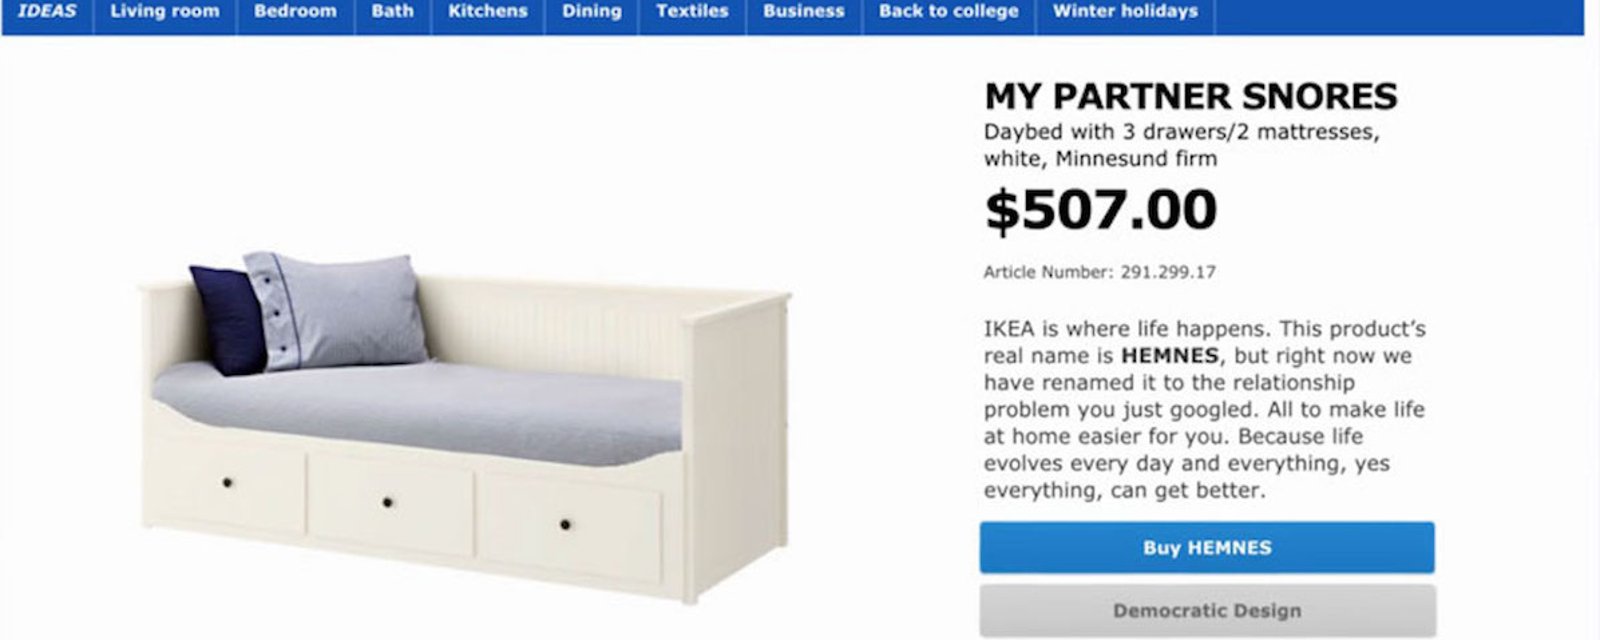 IKEA a renommé certains de ses produits en se basant sur les recherches populaires sur Google